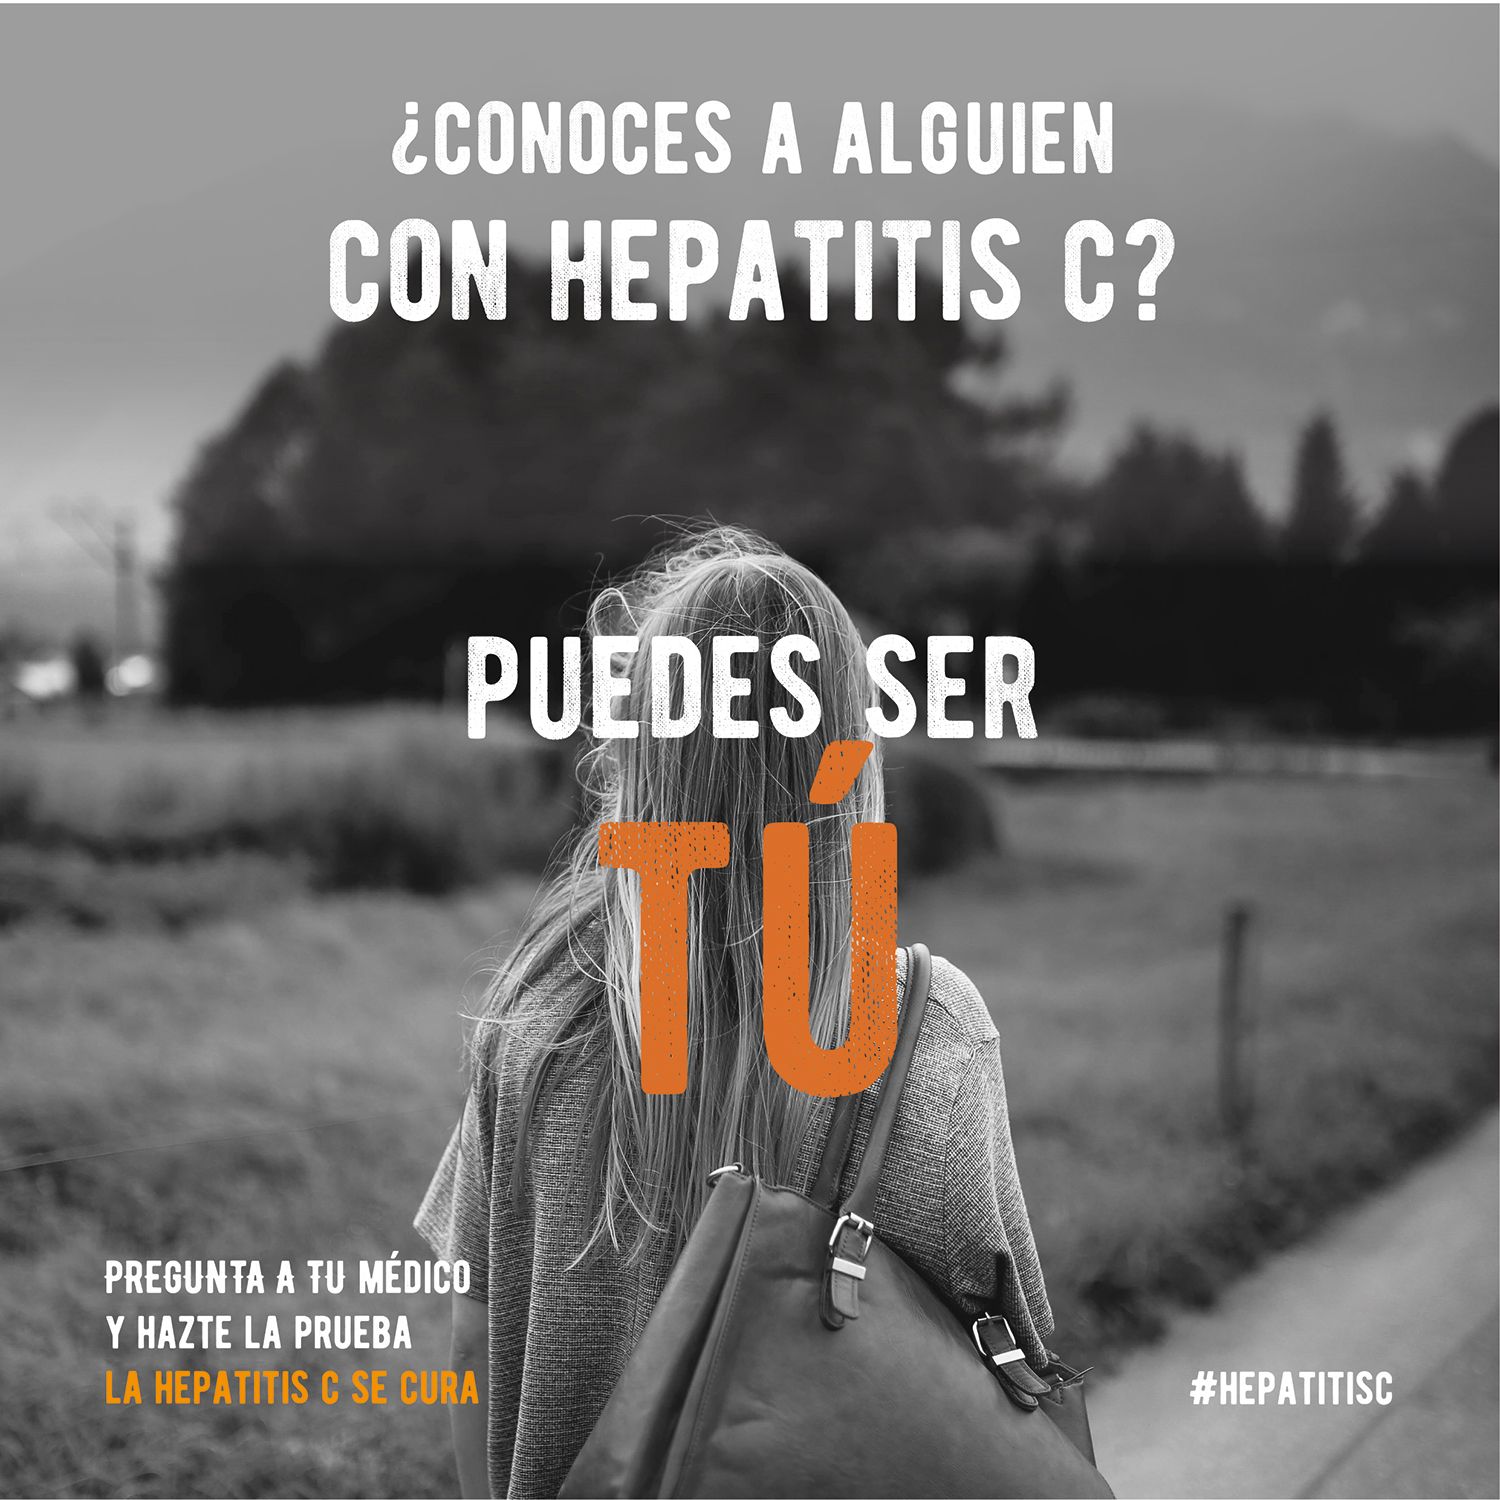 Día Mundial de las Hepatitis 2019 #hepatitisc, #nopasesdelargo #puedessertú